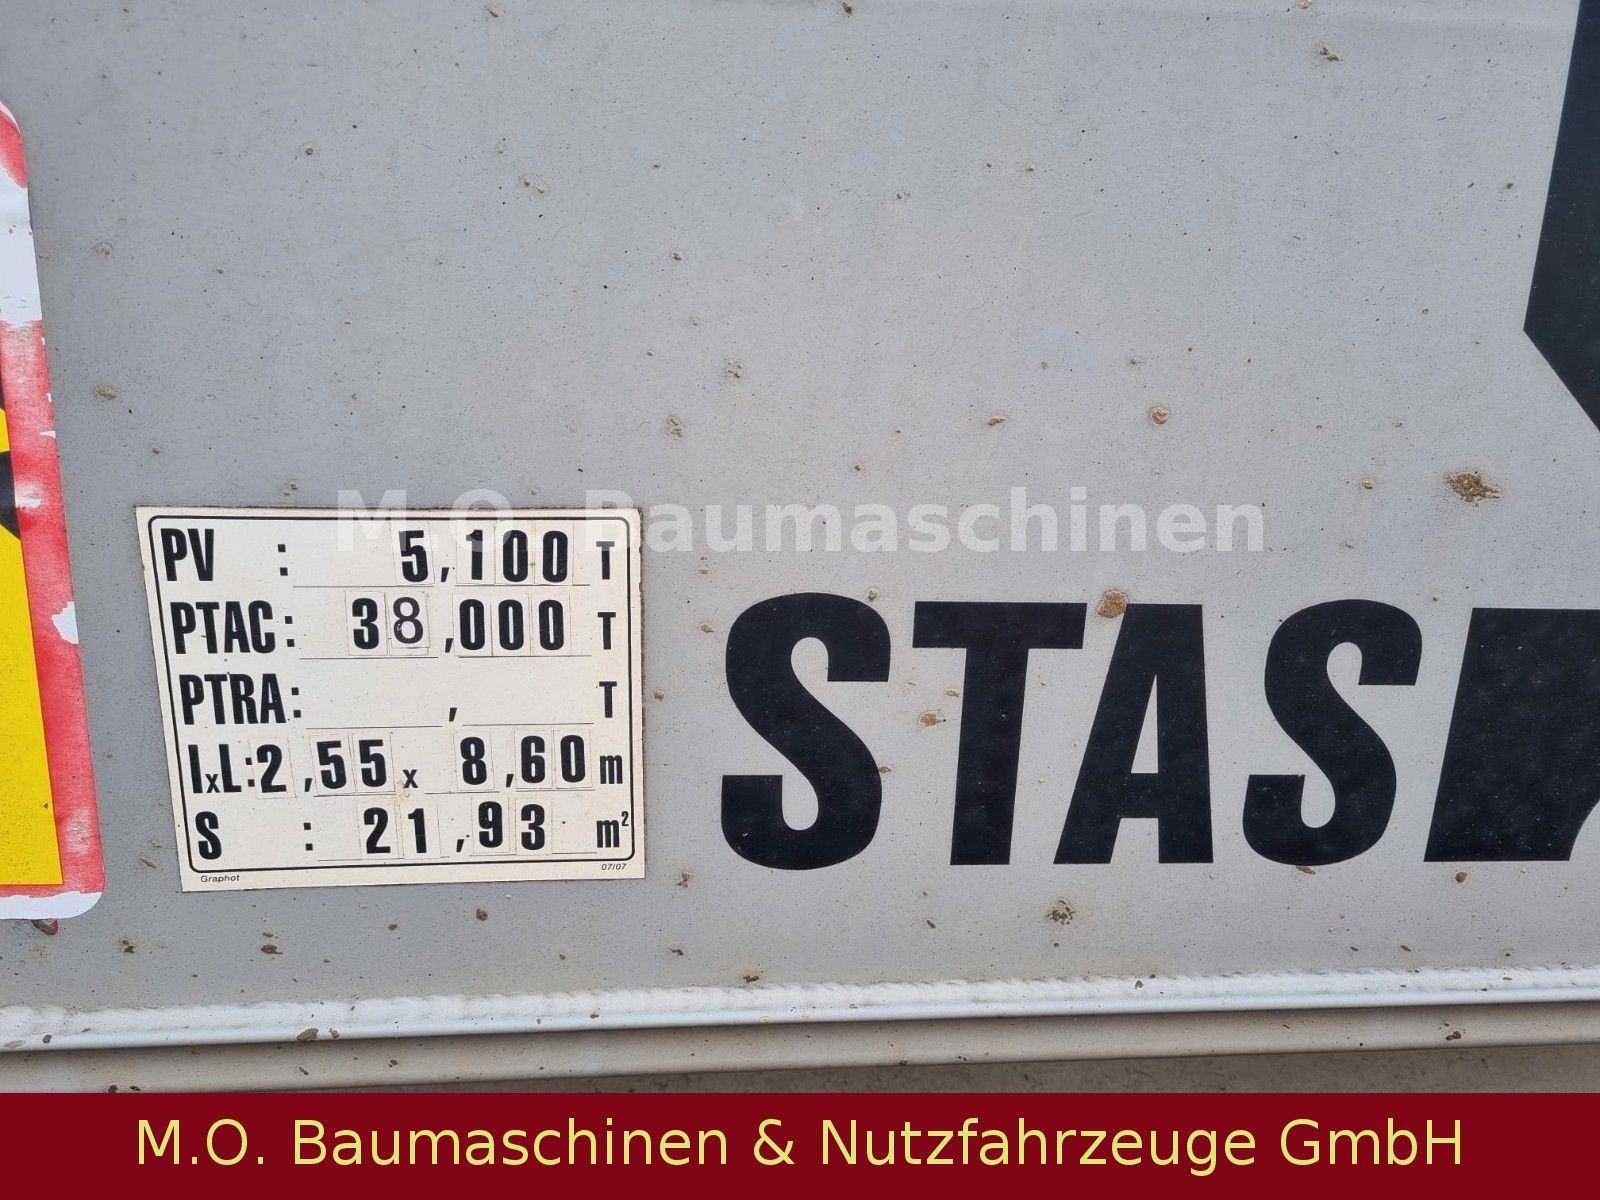 Fahrzeugabbildung Stas S339CX / 3 Achser / Luft / Plane /